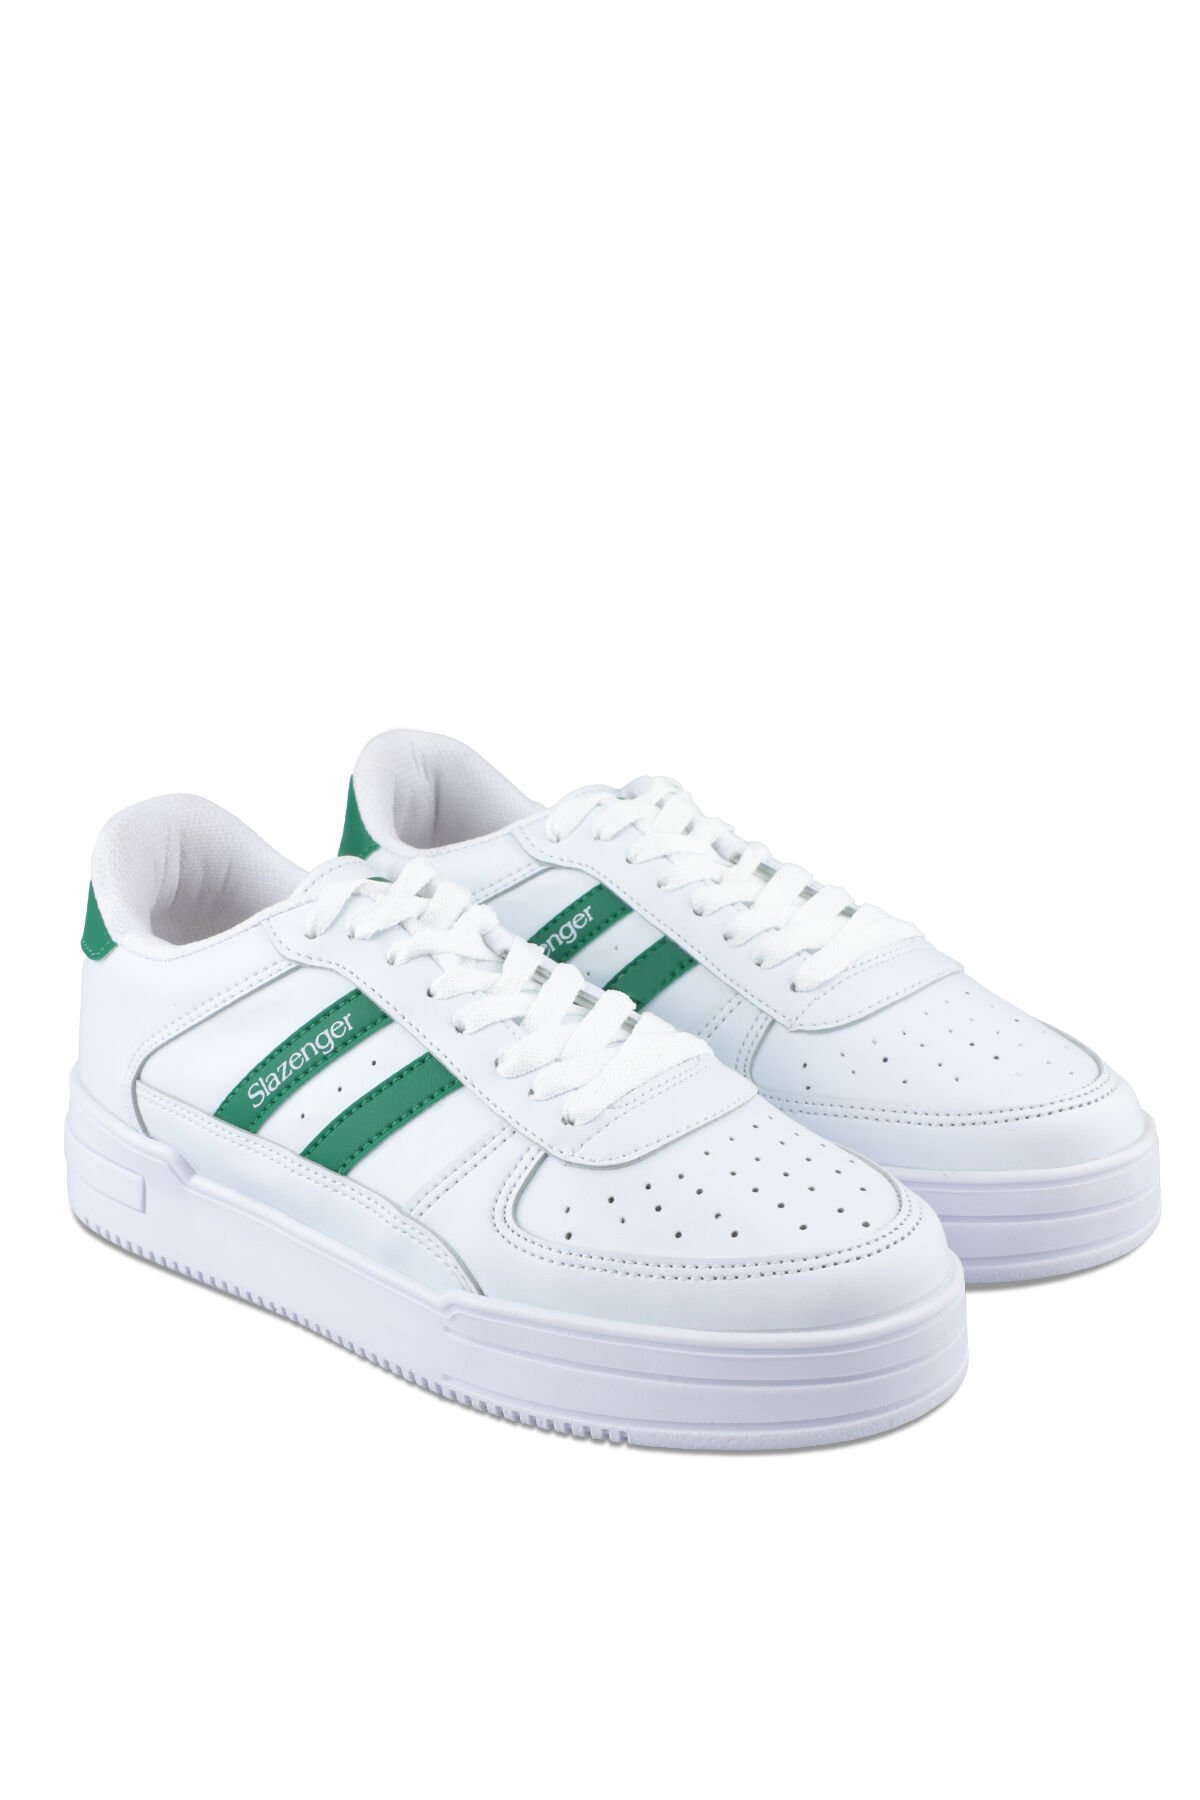 Slazenger CAMP IN Sneaker Kadın Ayakkabı Beyaz / Yeşil - Thumbnail